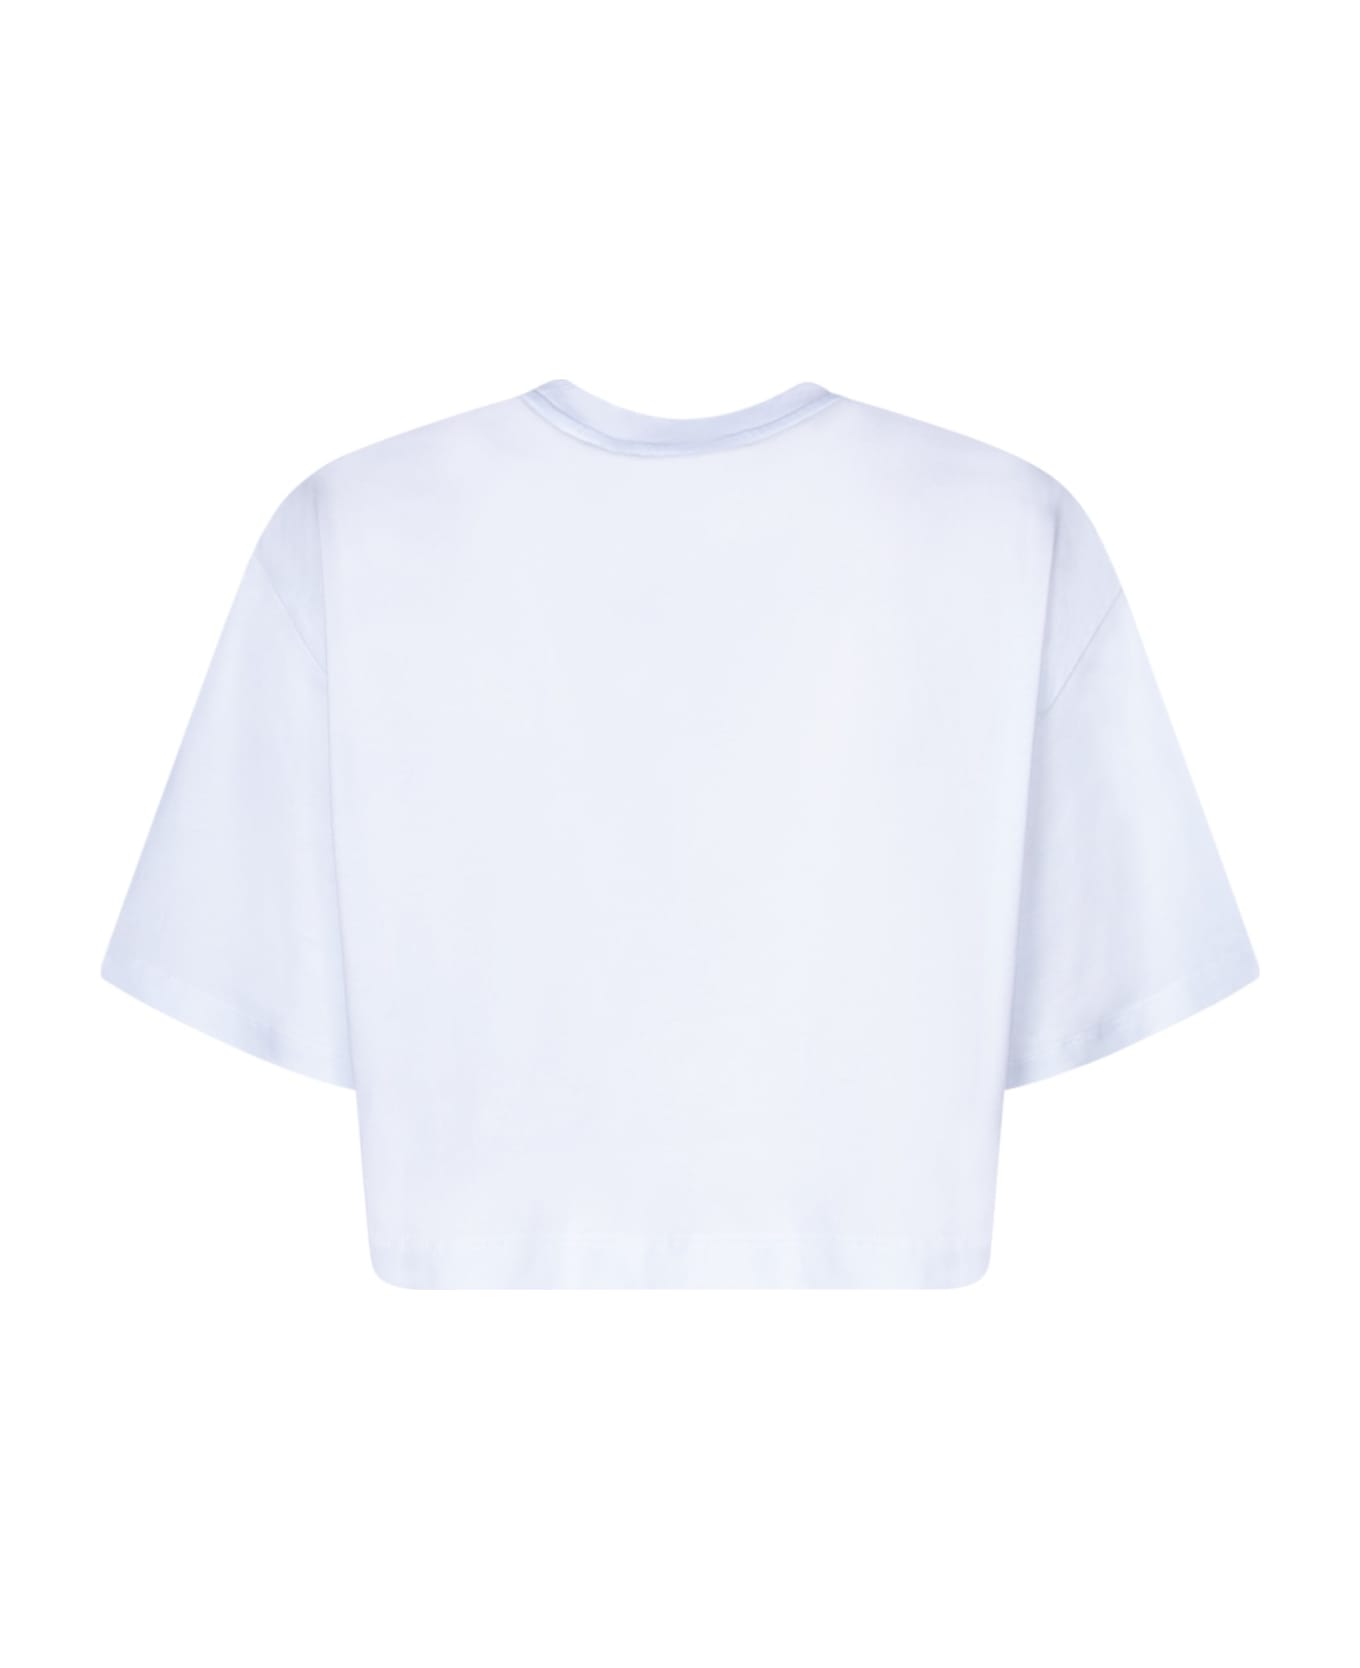 MSGM Graffiti Logo White T-shirt - White